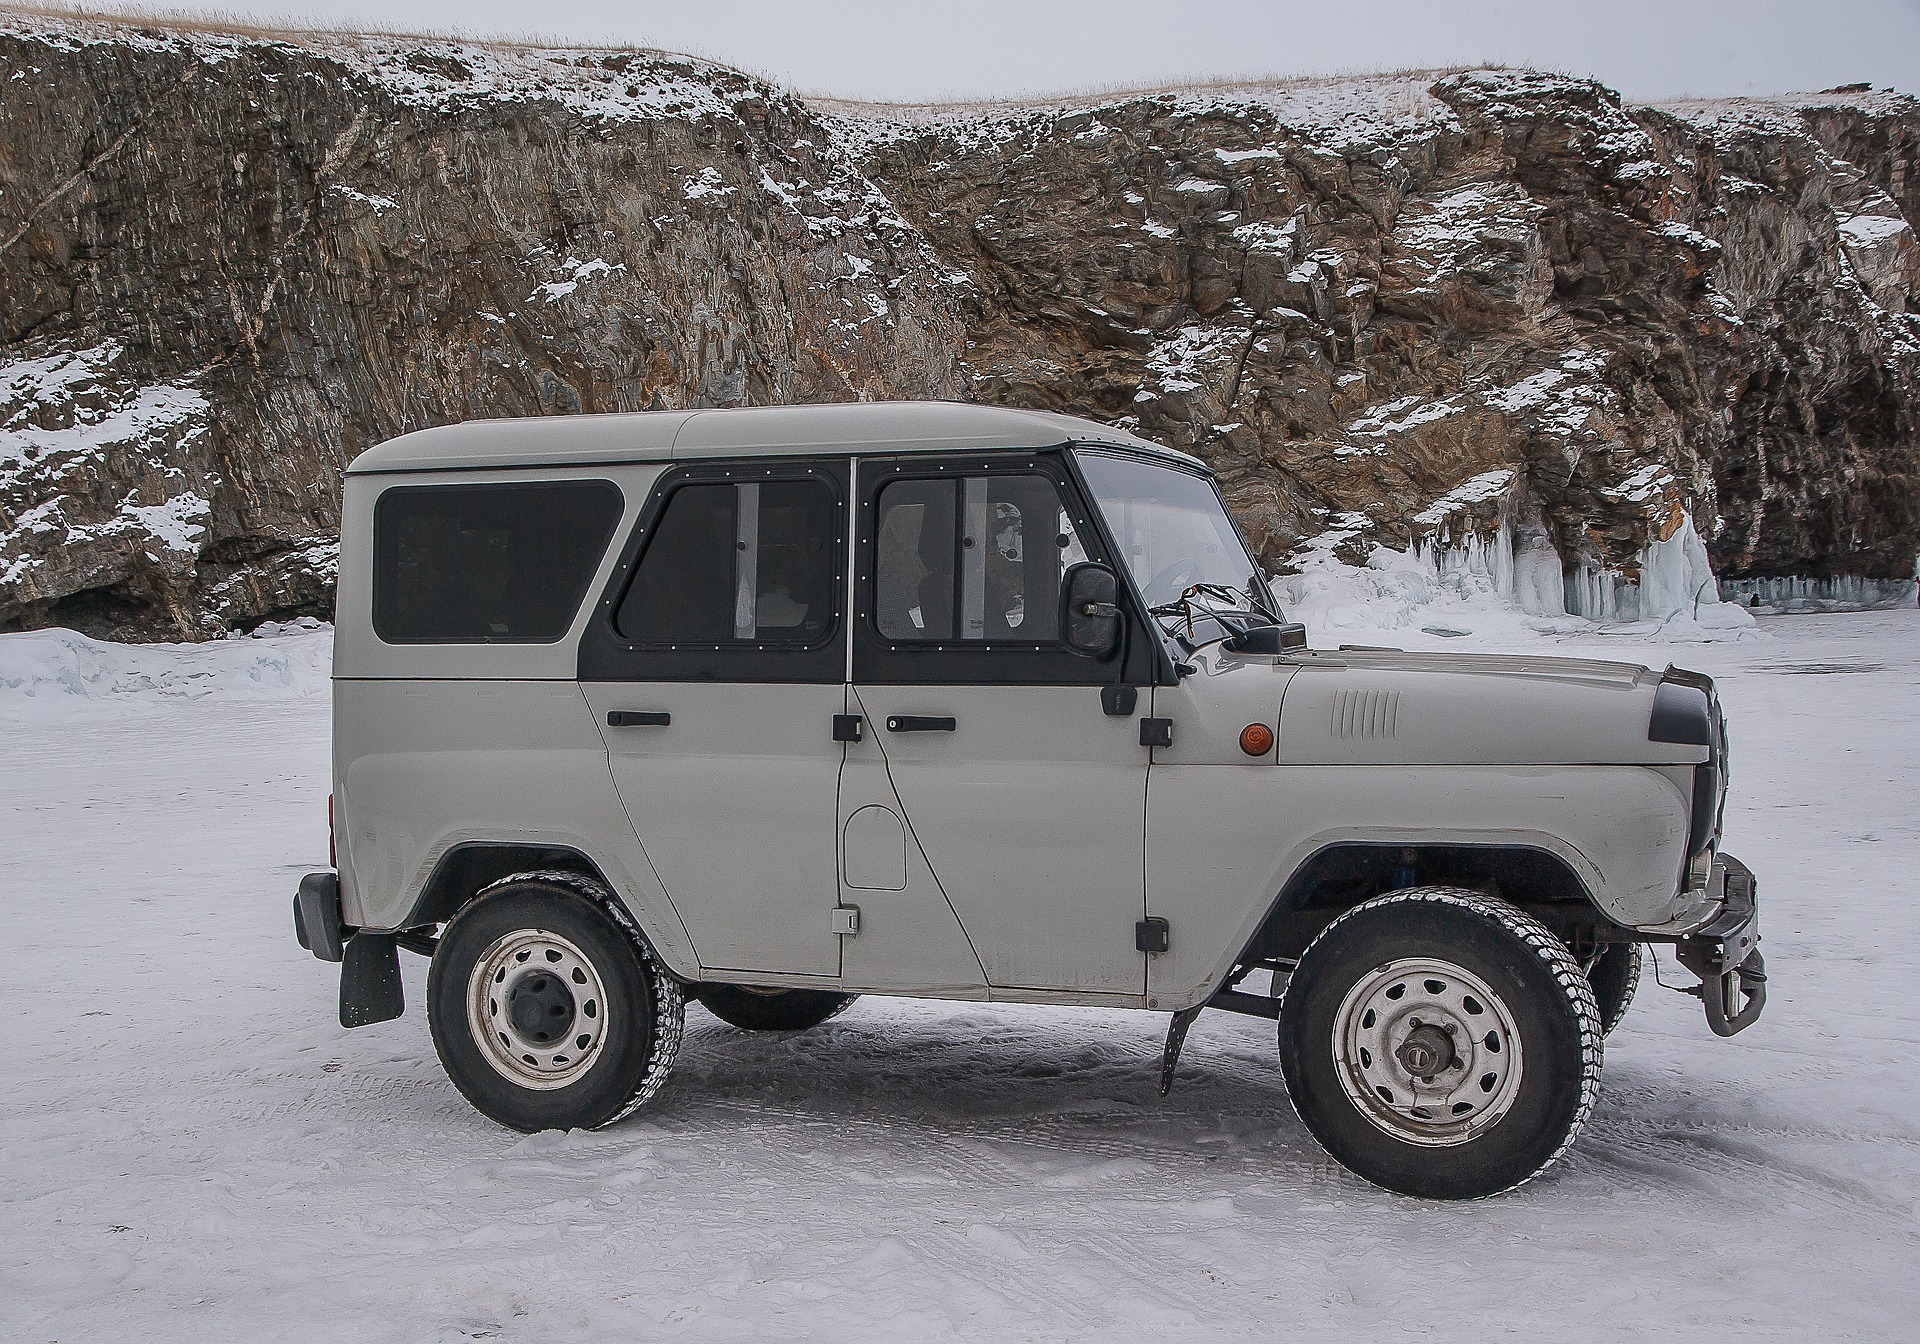 В интернете опубликовали фото редкого исполнения внедорожника УАЗ Т-469 для уборки снега